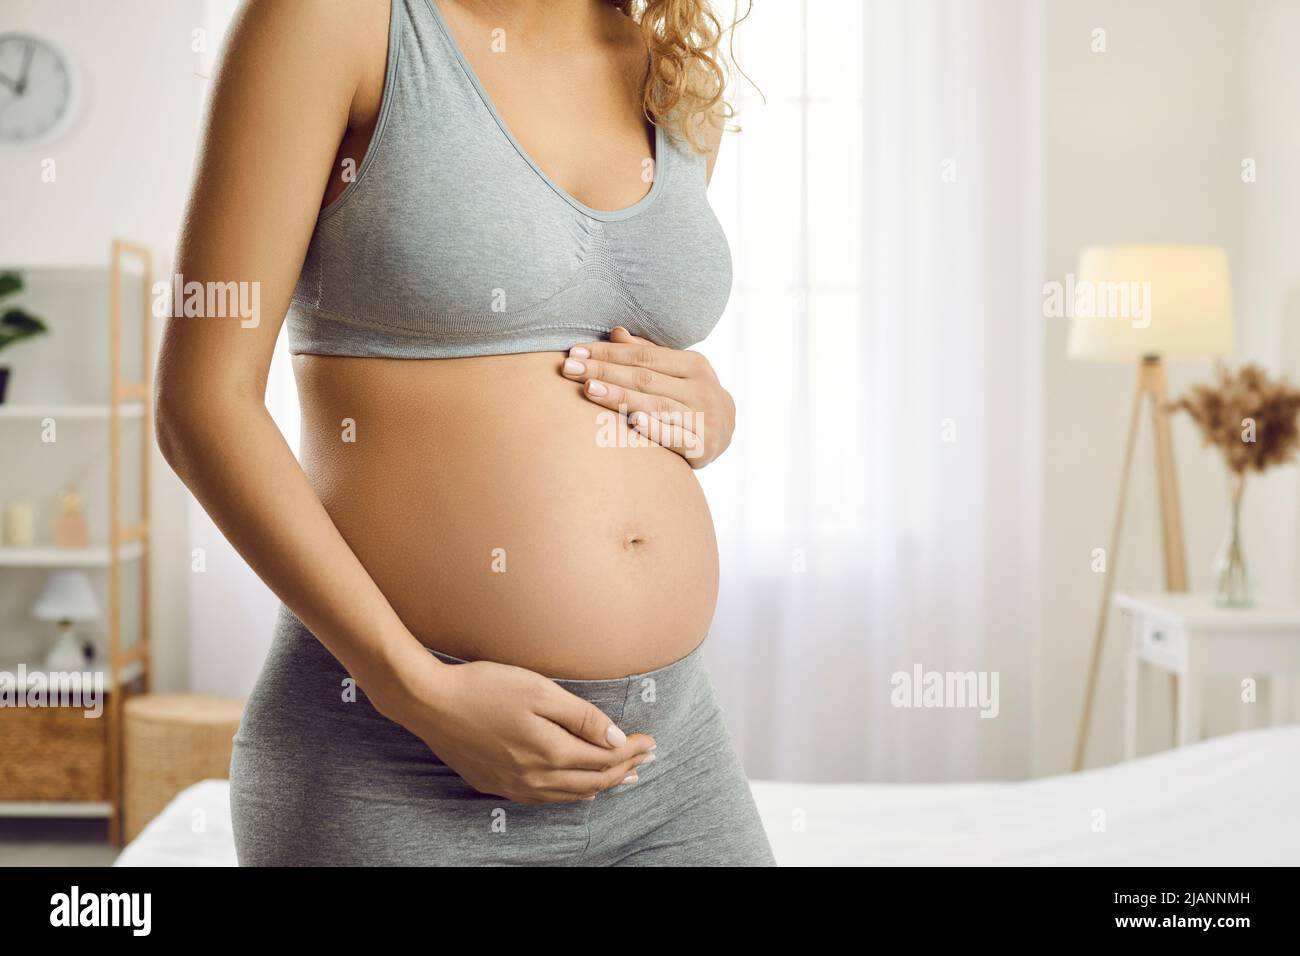 Young woman expecting baby hugs her tummy enjoying tender moments of motherhood. Stock Photo